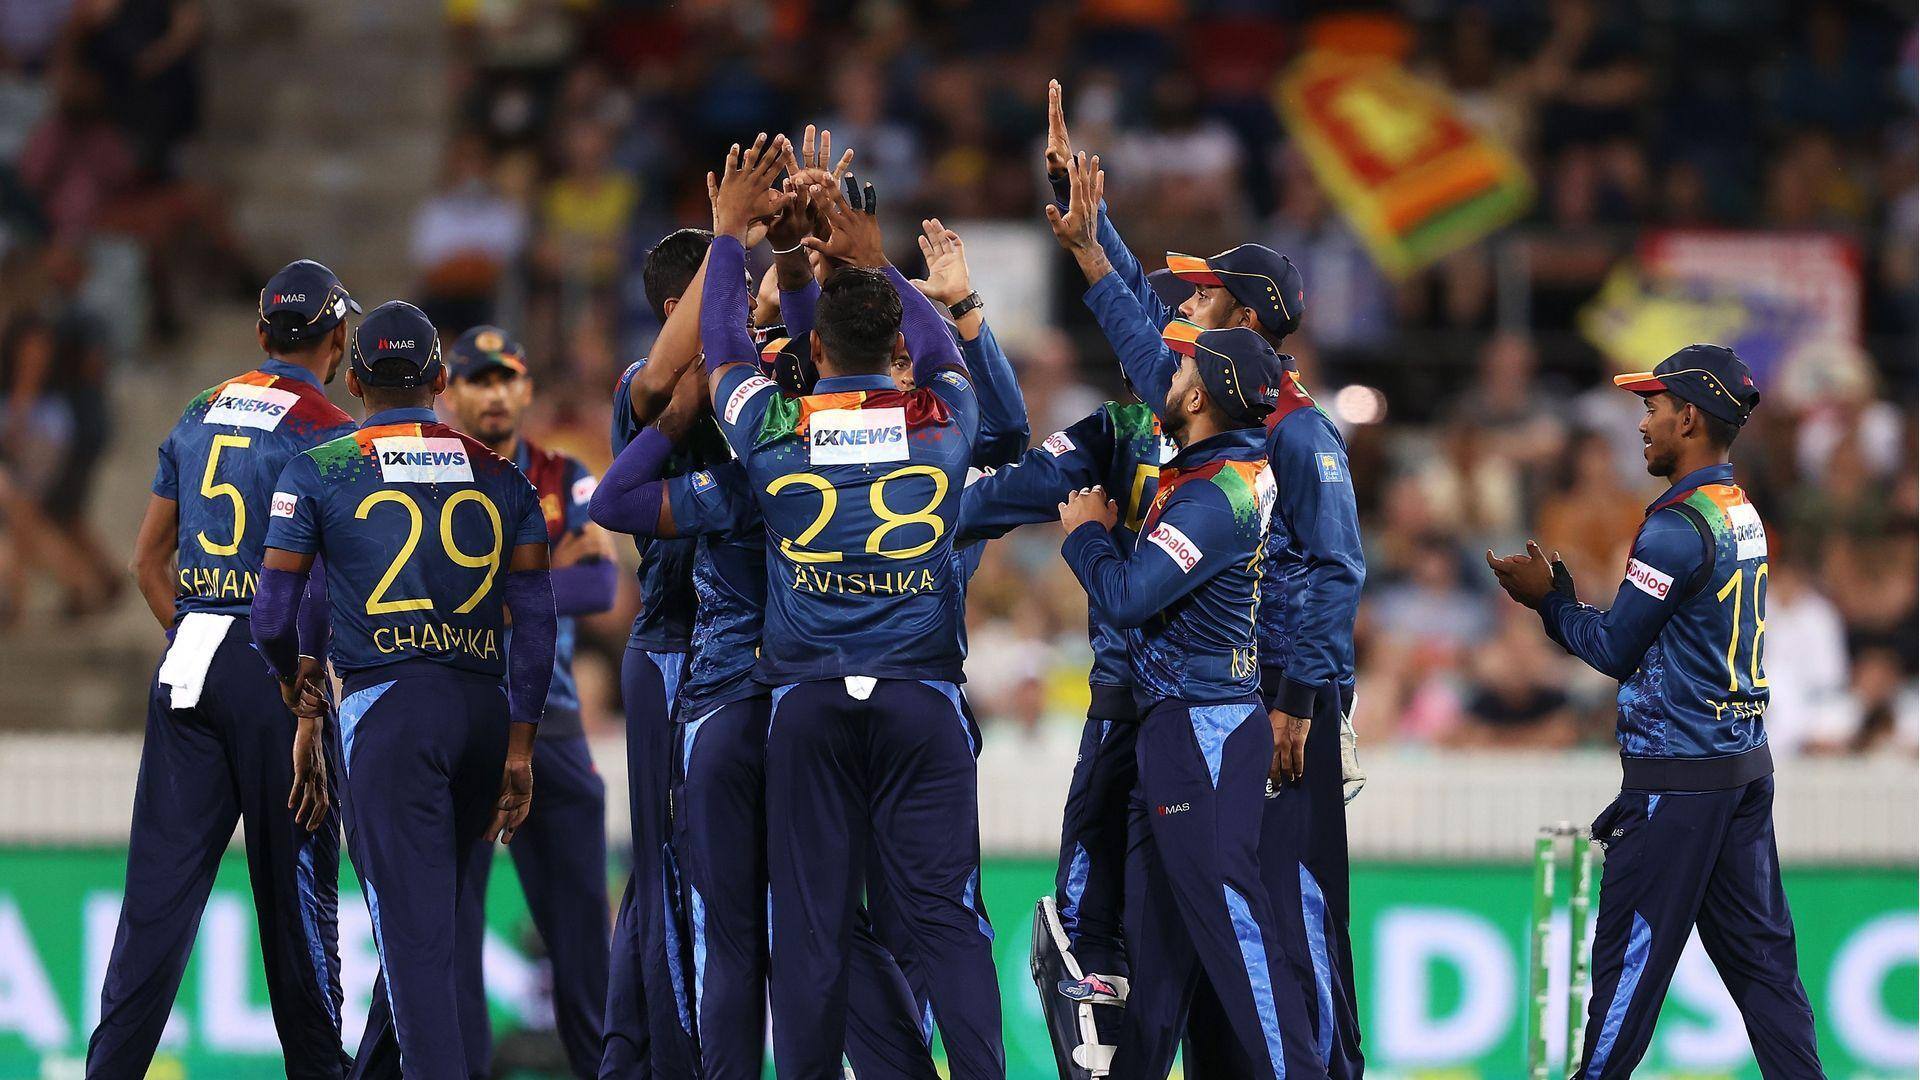 SL record 13 ODI wins in a row: Key stats